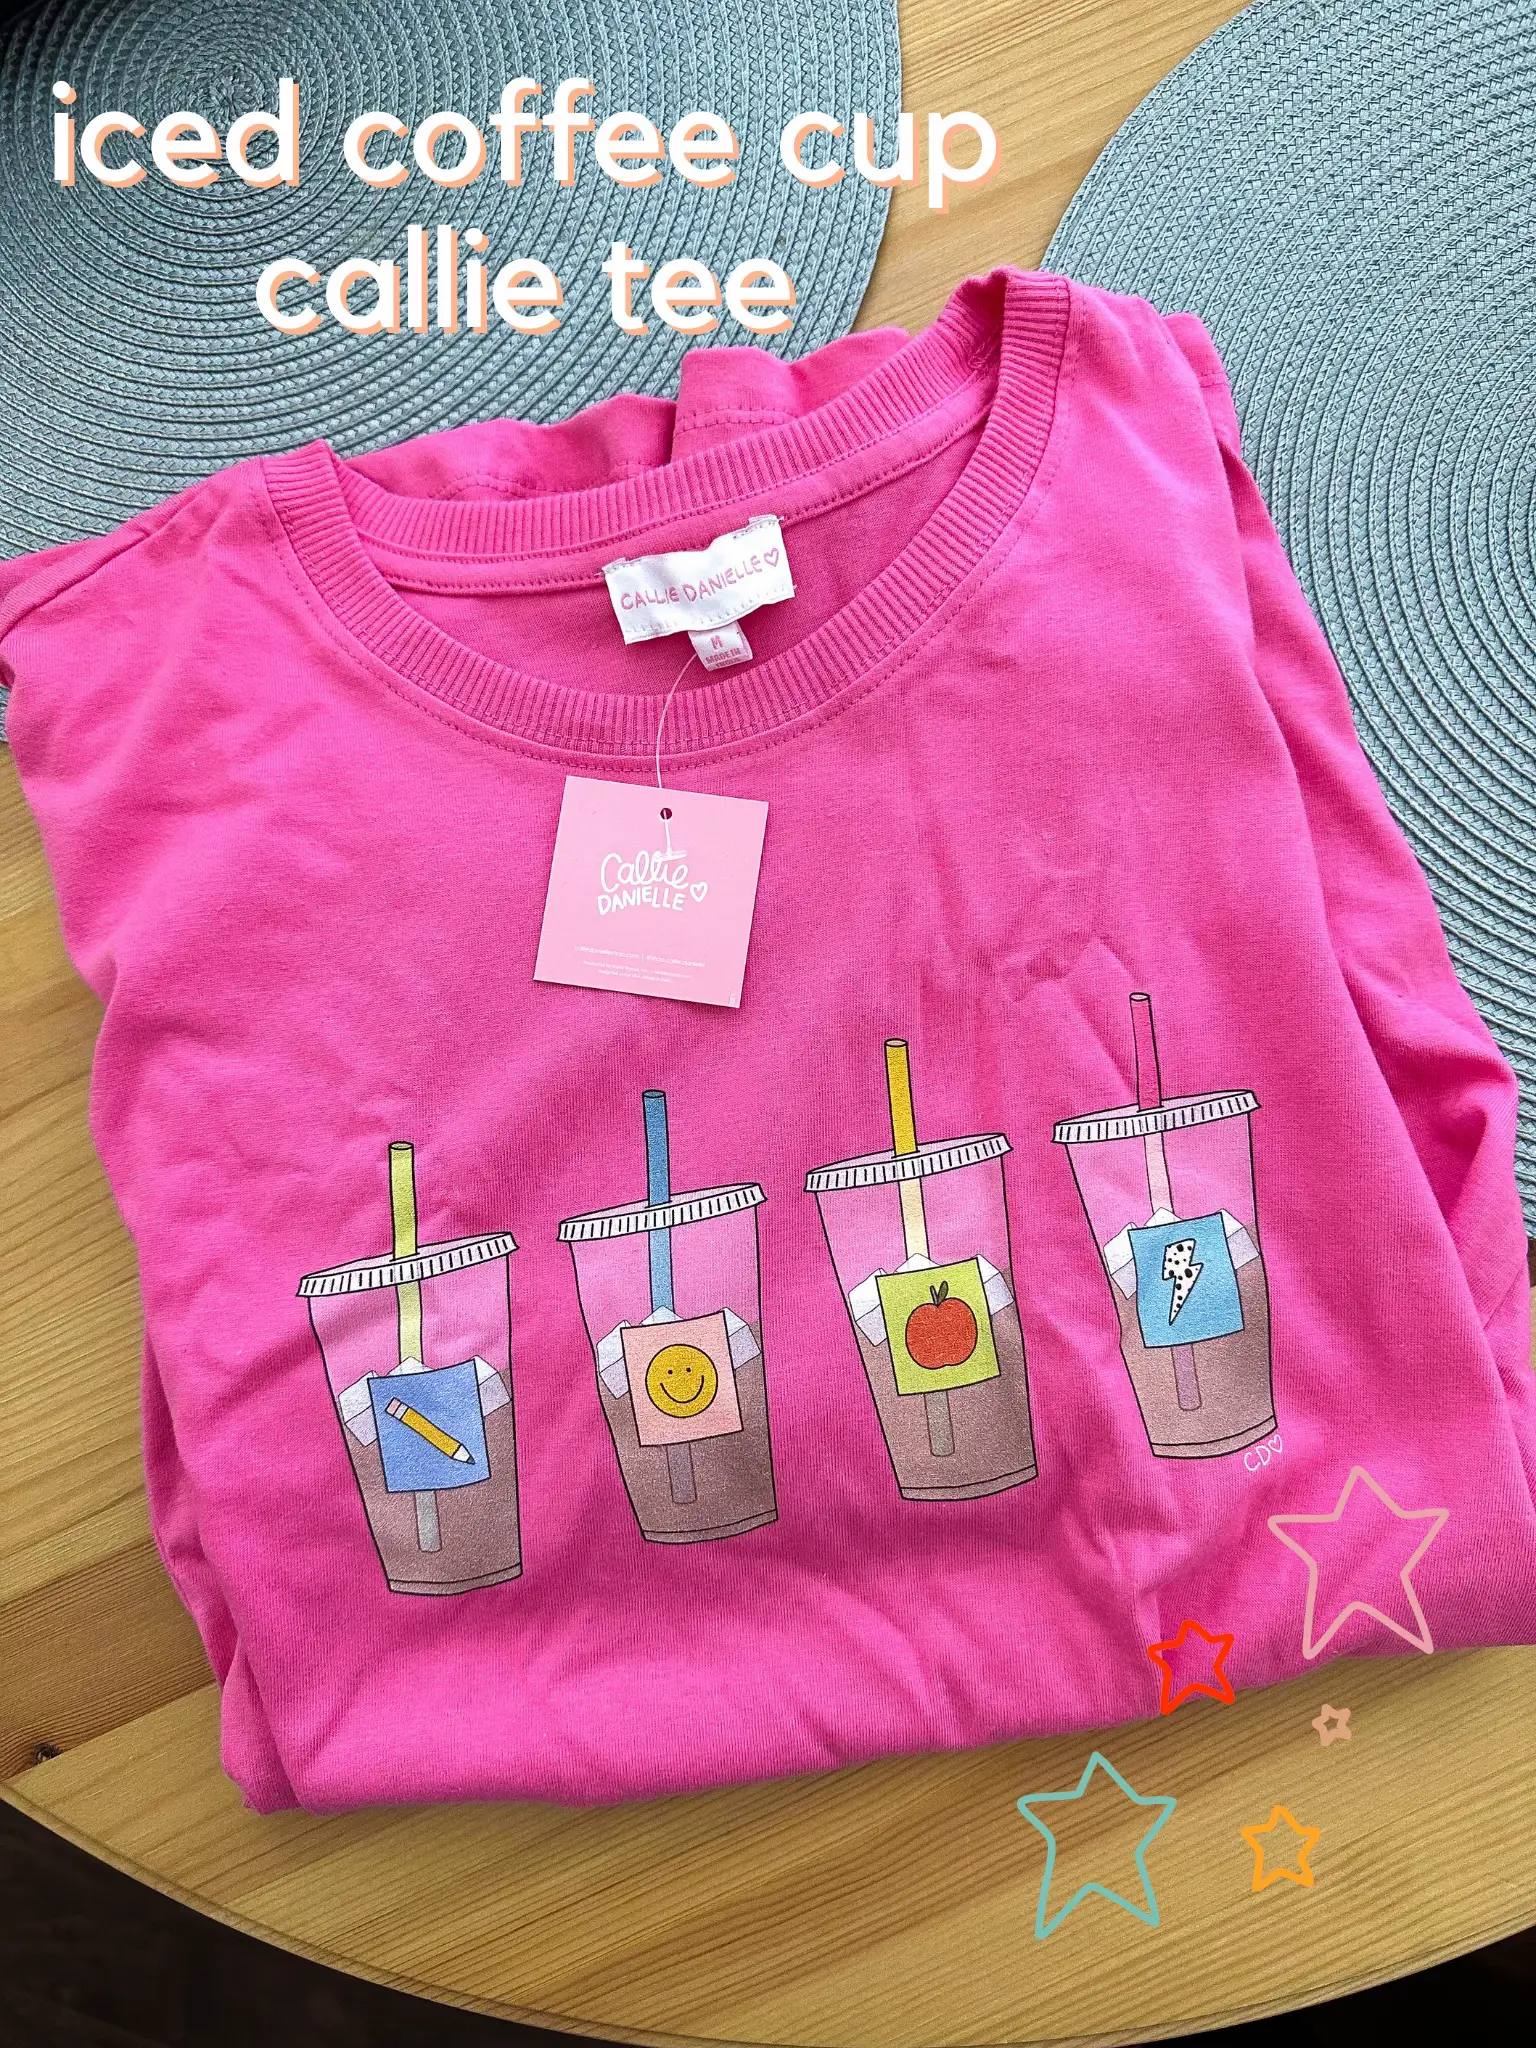 Callie Danielle - Motivational Tees - Callie Danielle Shop